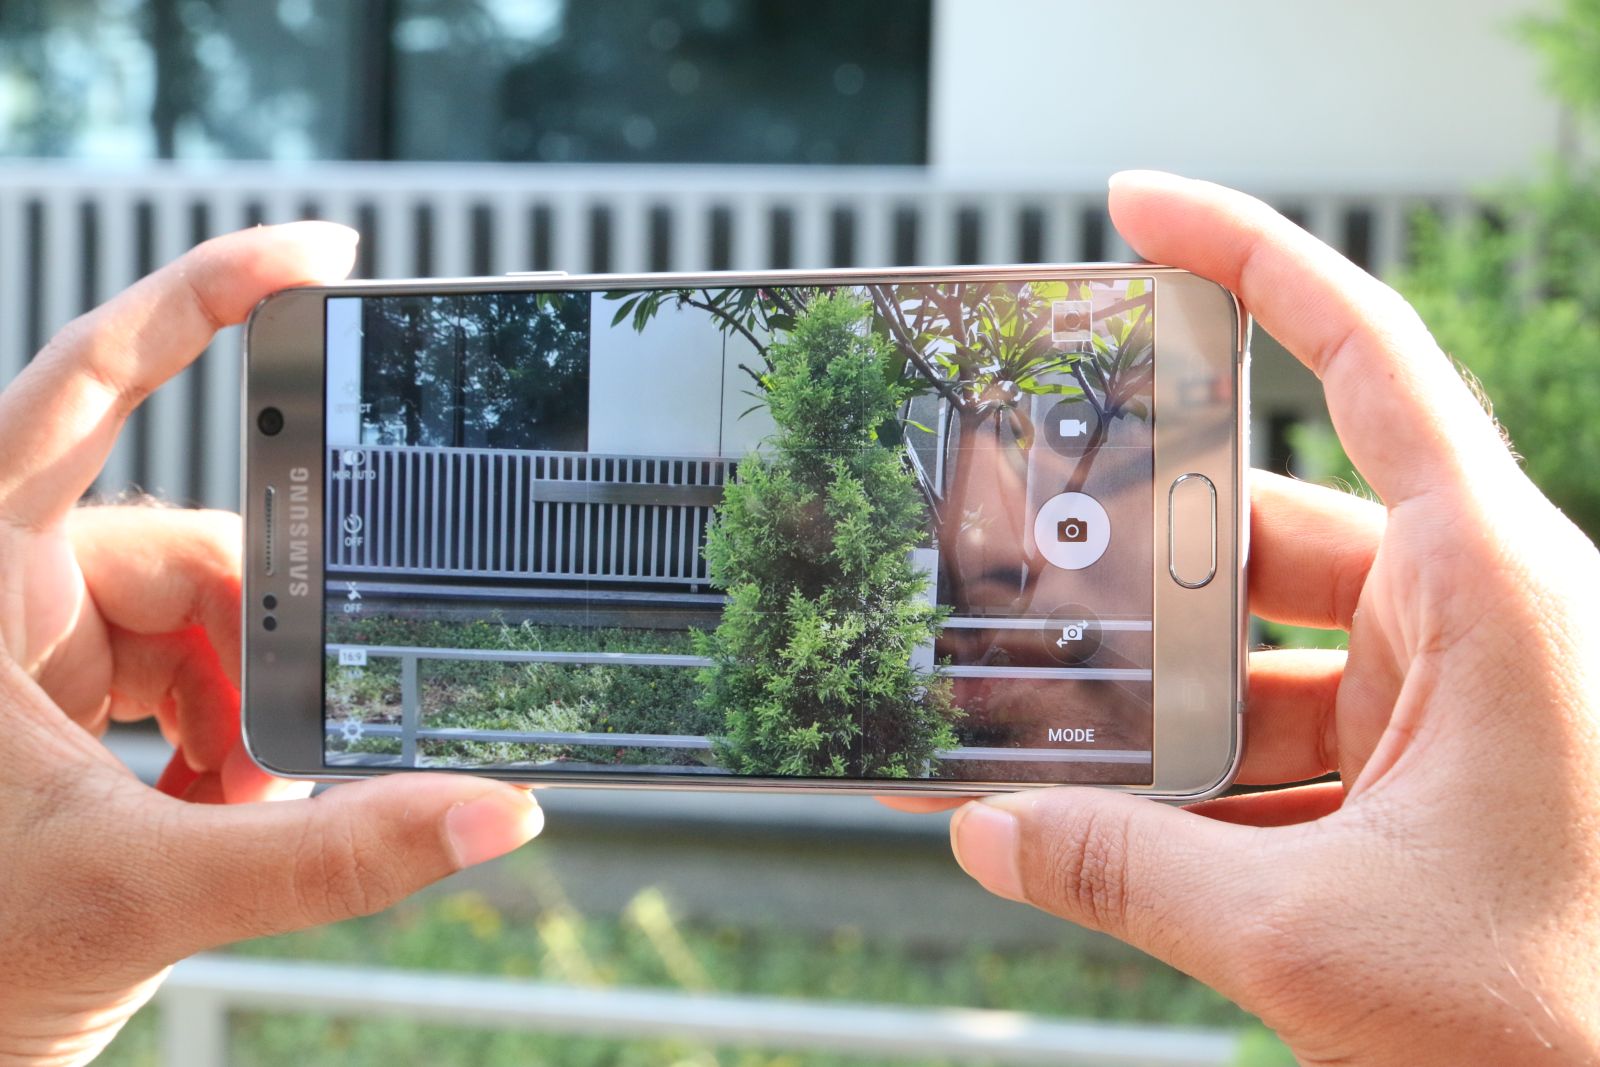 گوشی گلکسی اس 7 از دوربین 12 مگاپیکسلی با سنسور بزرگ 1.2 اینچی استفاده می کند